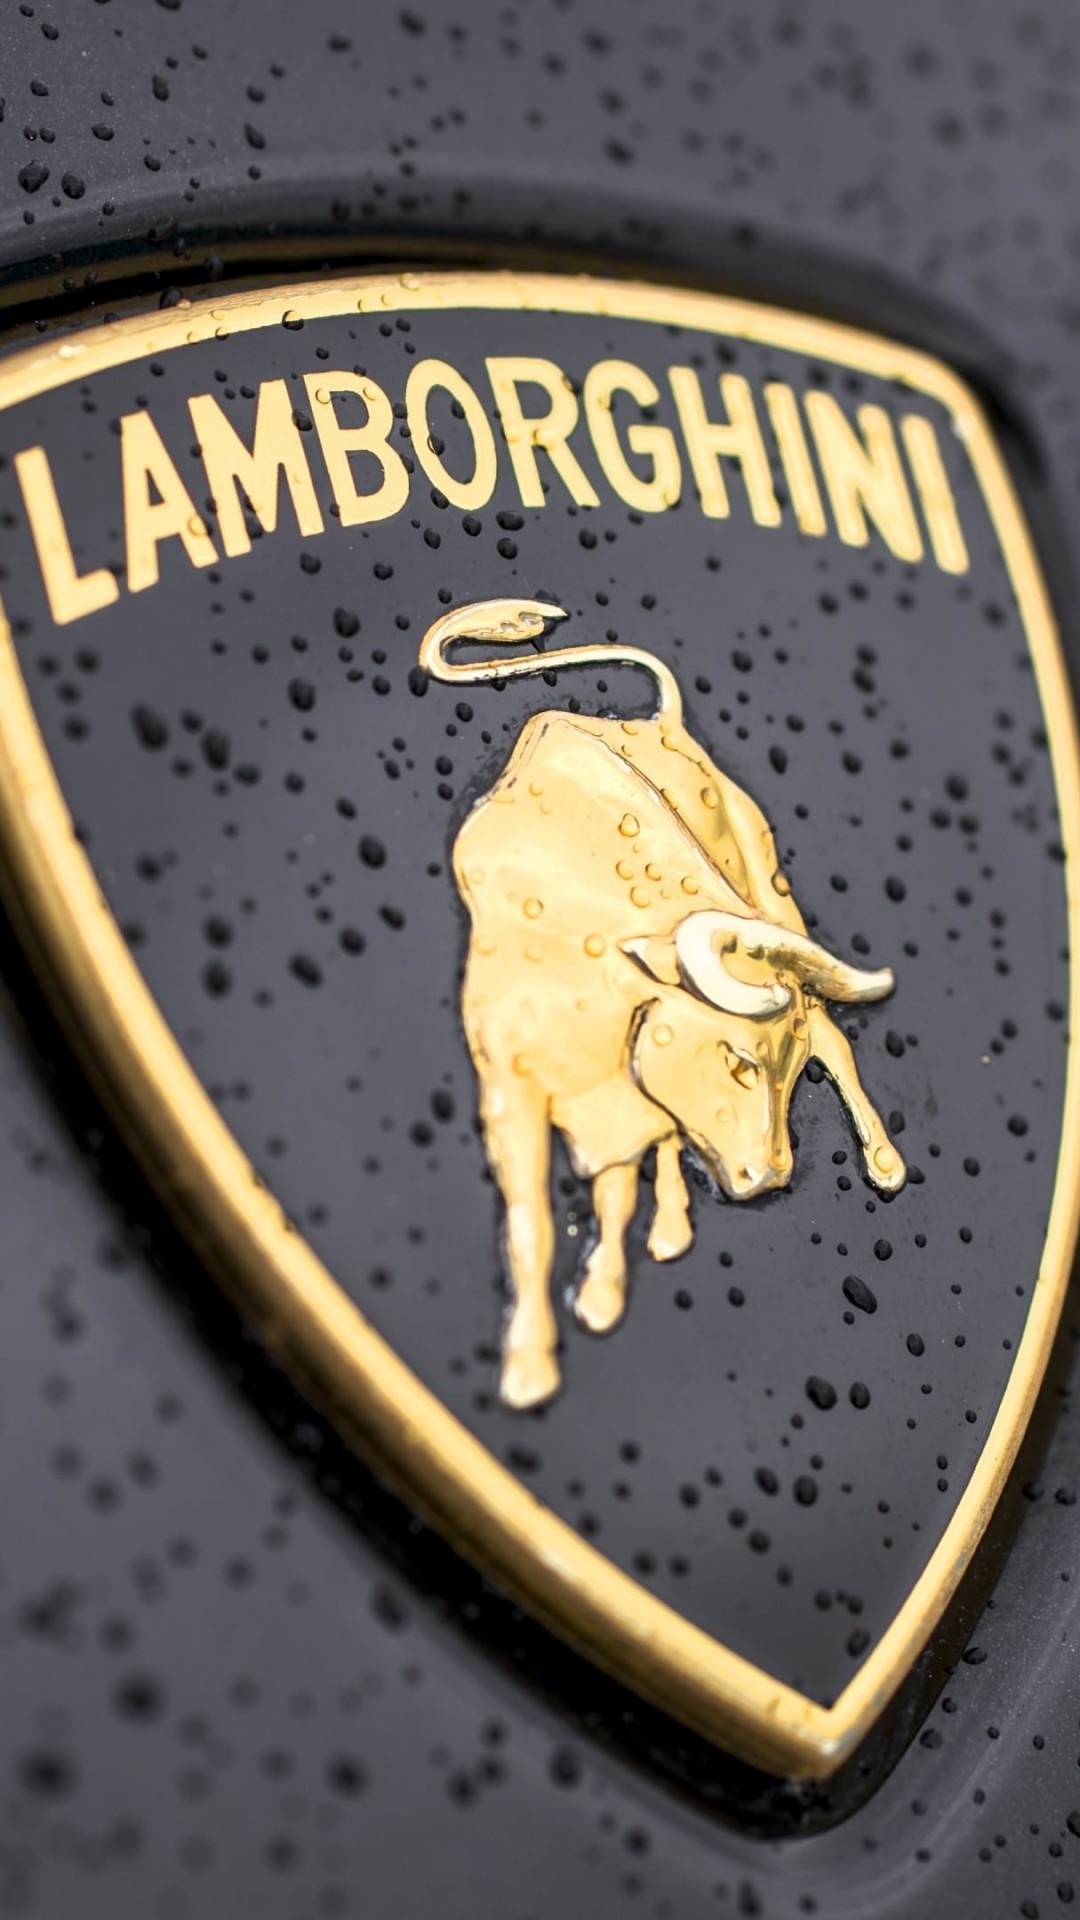 Lamborghini Logo Wallpaper for SAMSUNG Galaxy S4